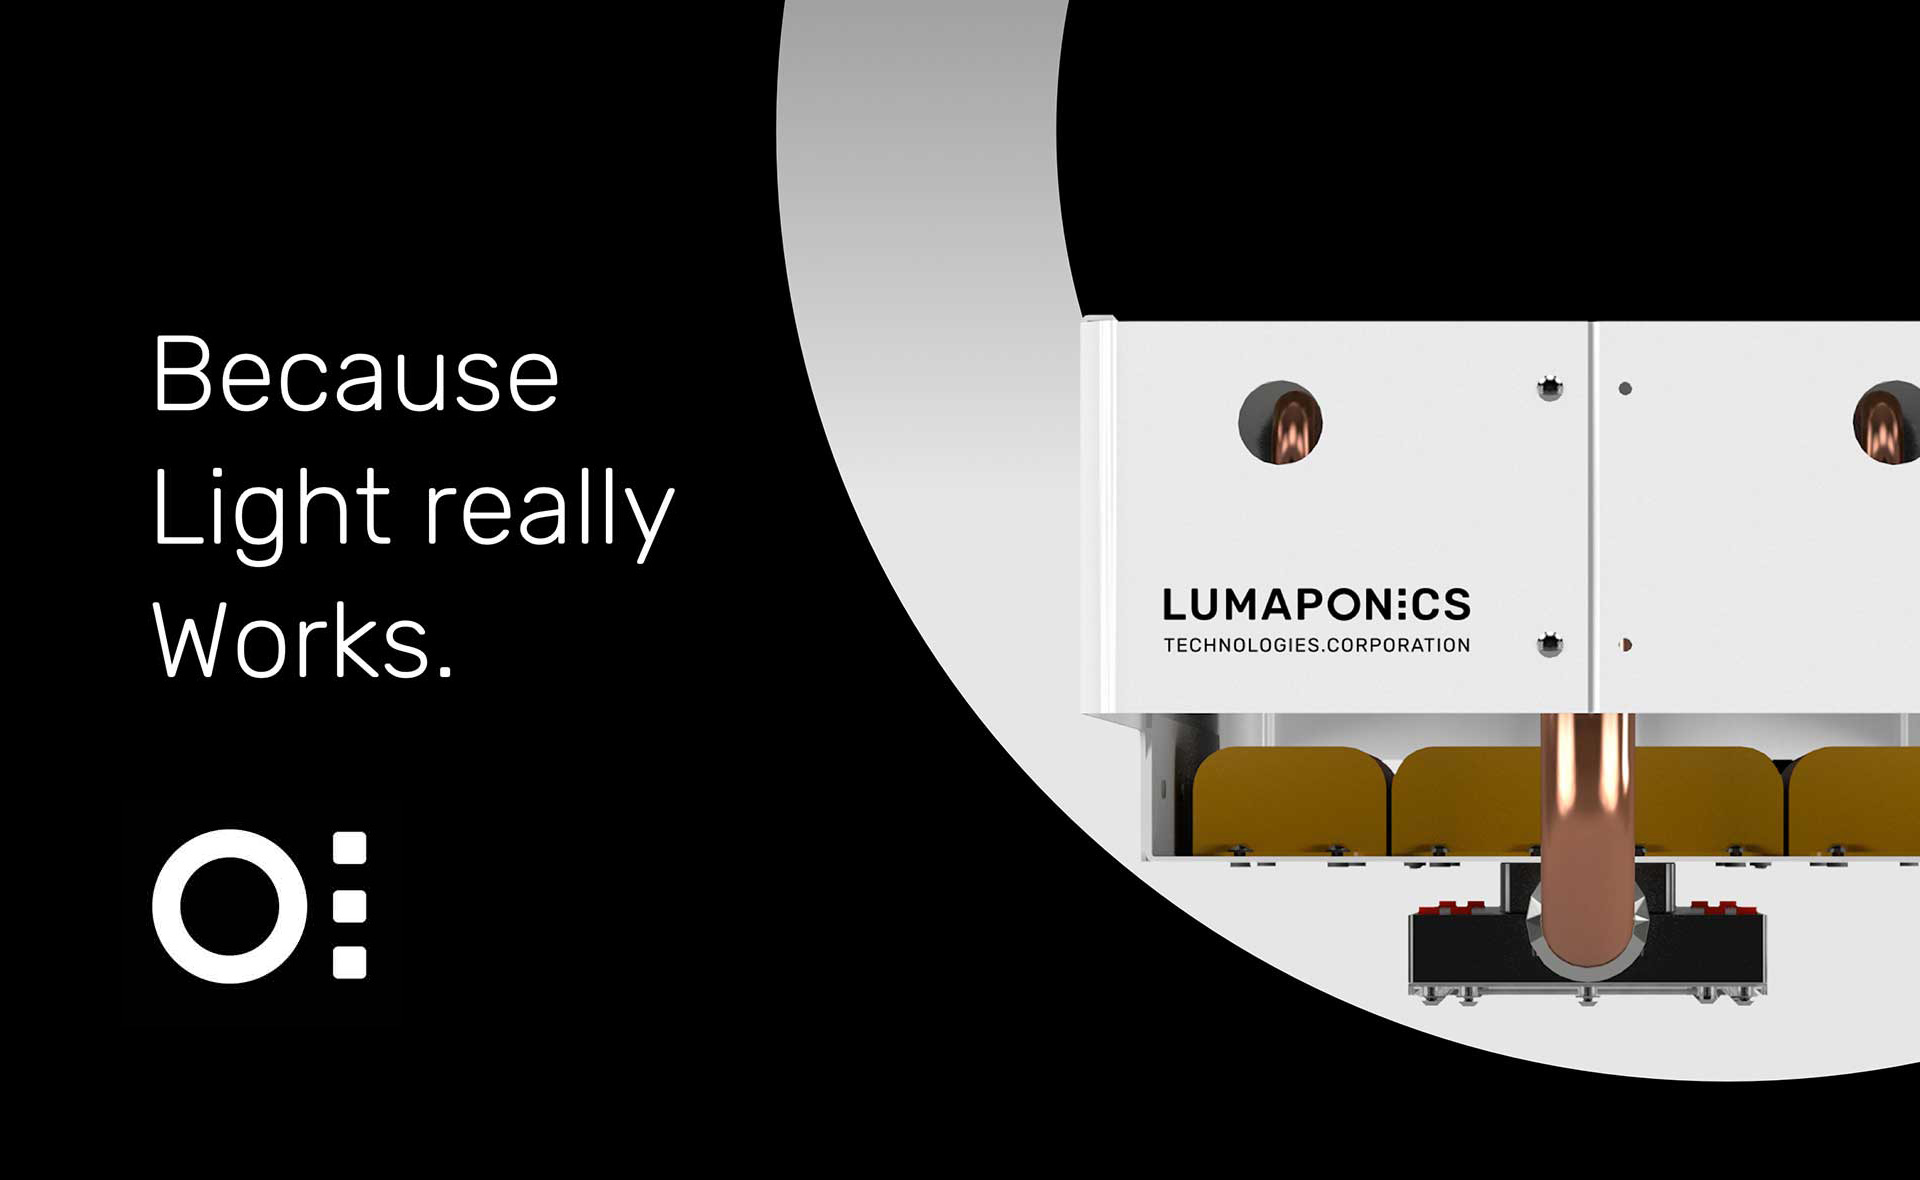 Lumaponics